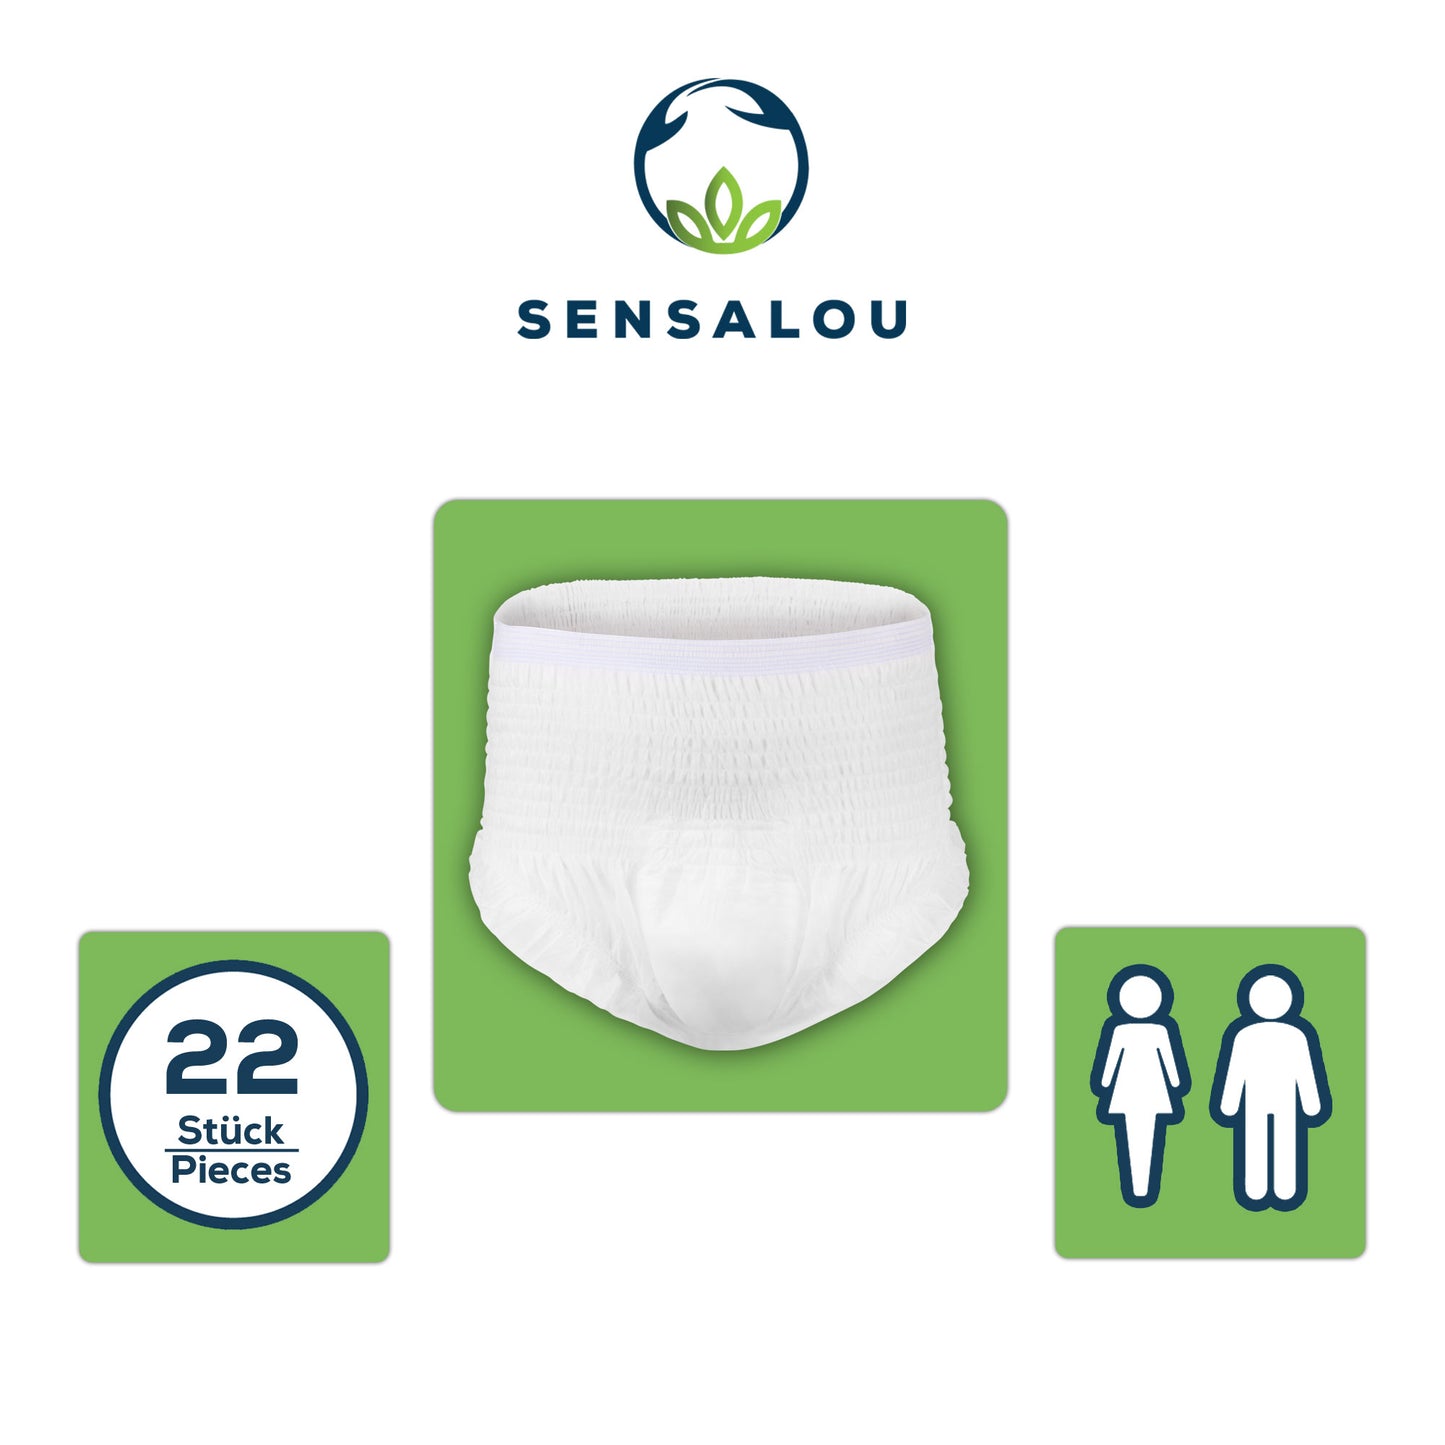 Sensalou Pants Maxi - Size XXL